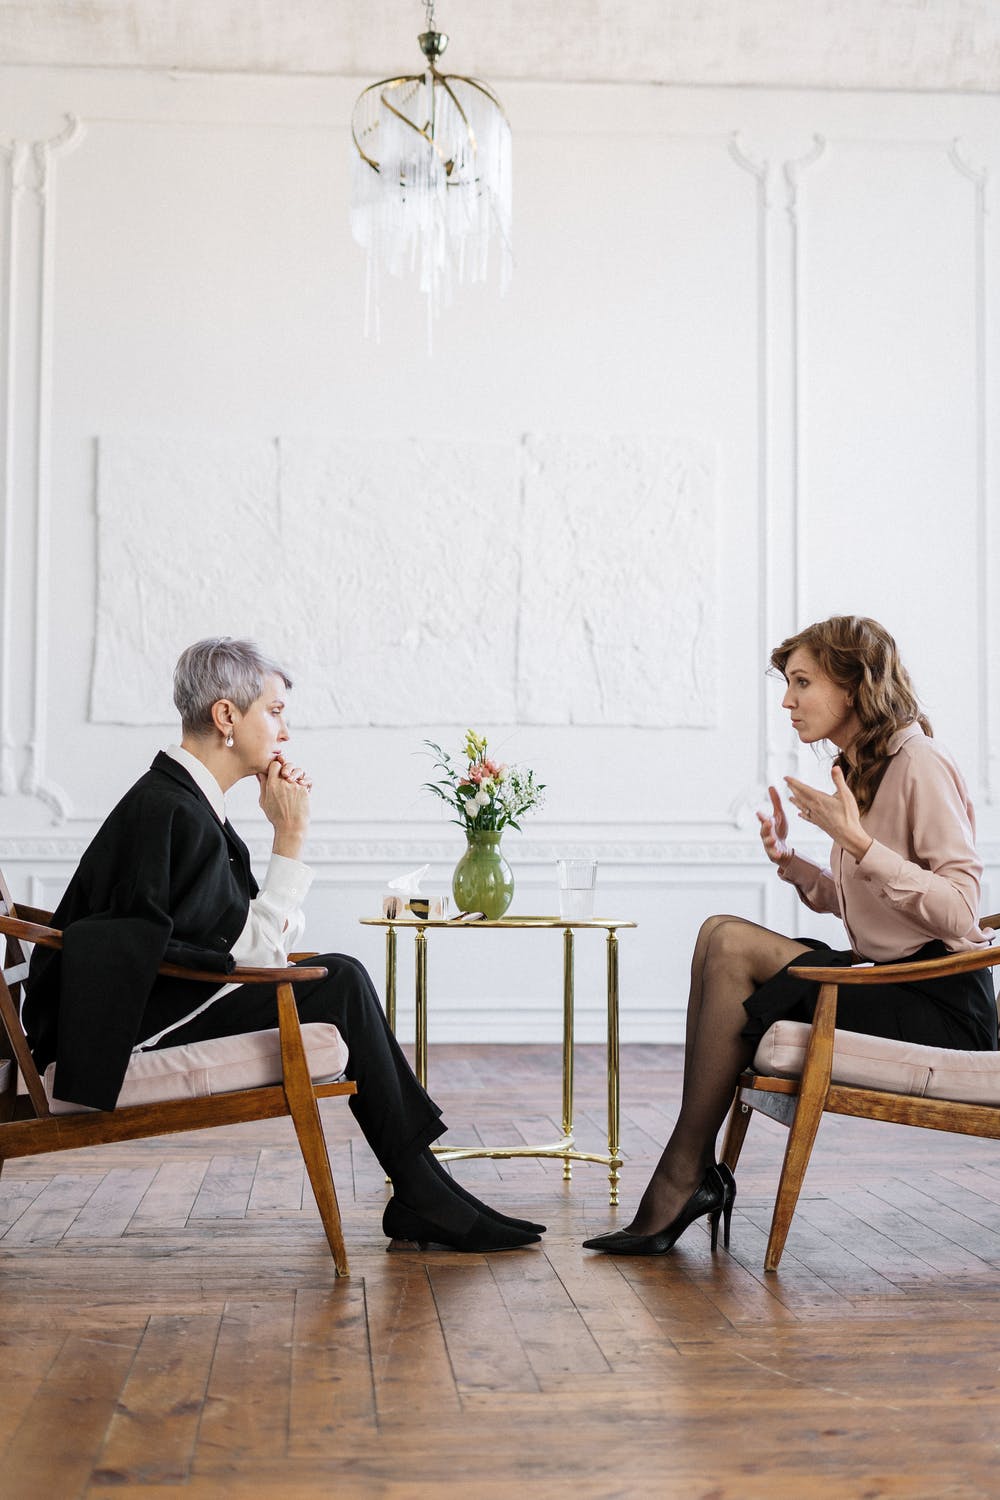 La imagen muestra dos mujeres sentadas una frente a la otra.